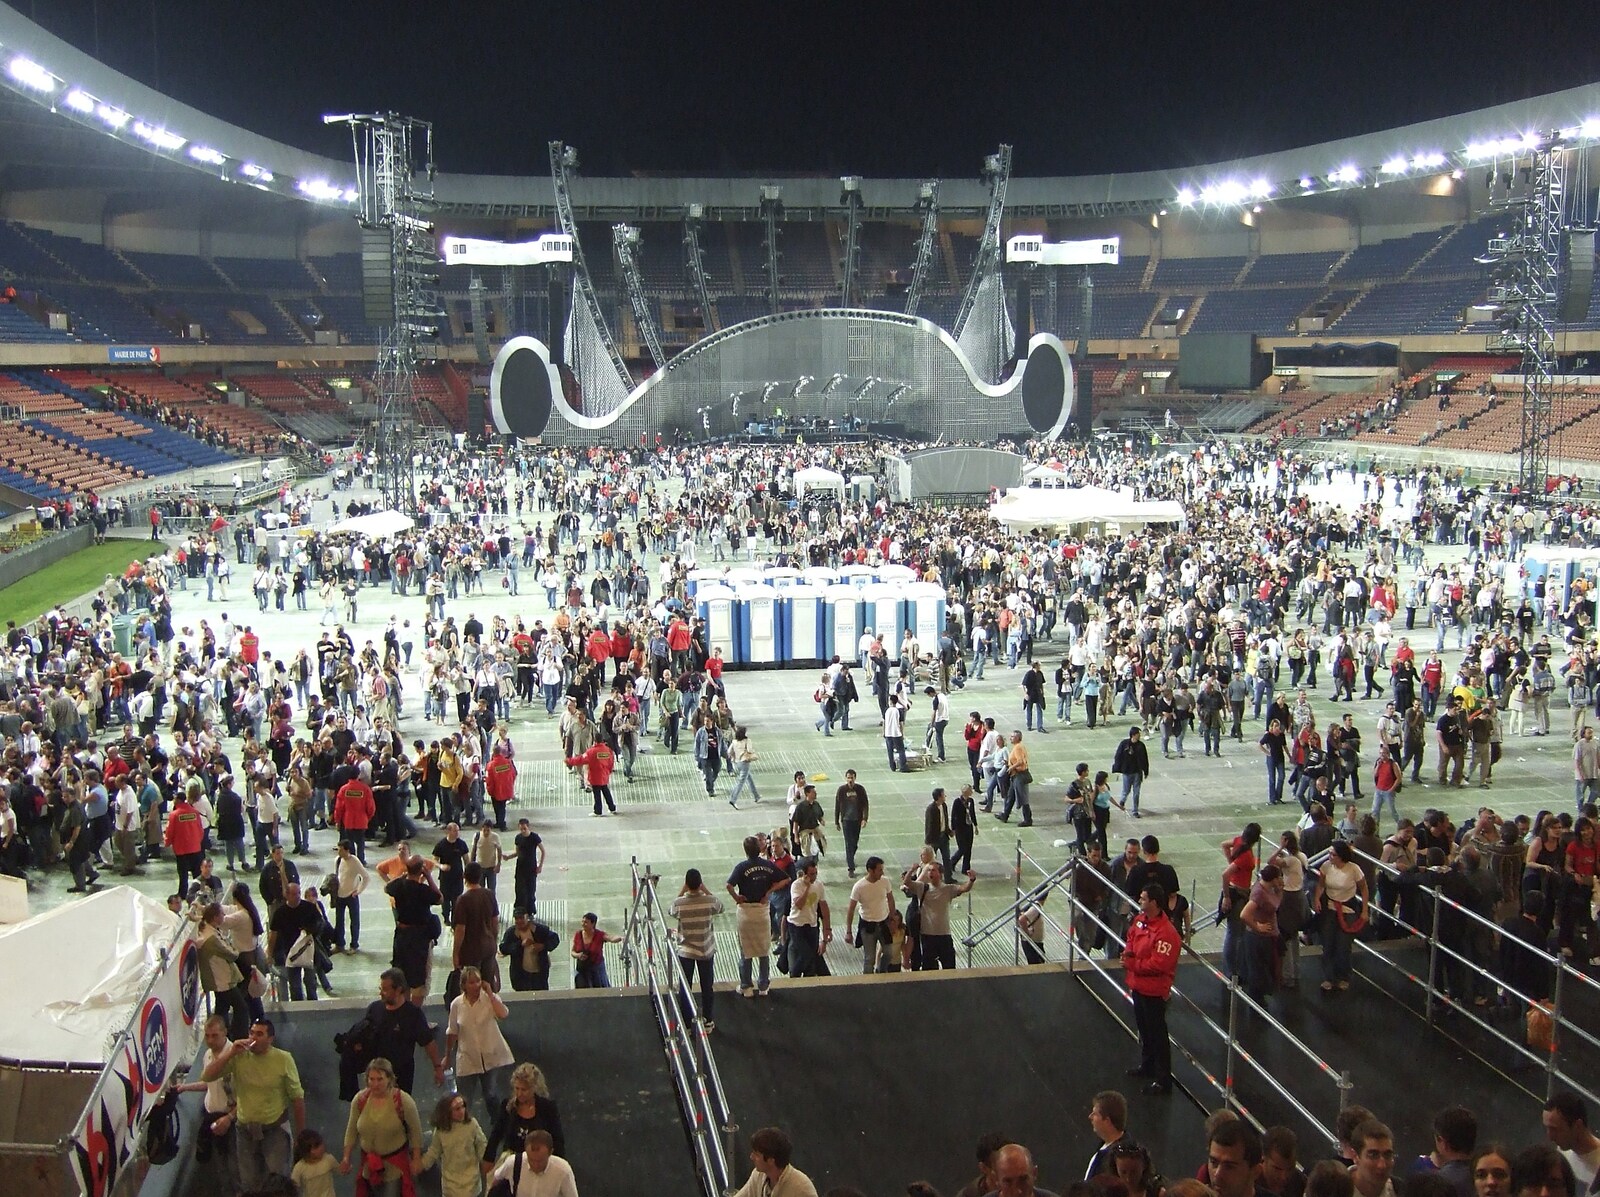 The Parc Des Princes stadium empties from Genesis Live at Parc Des Princes, Paris, France - 30th June 2007